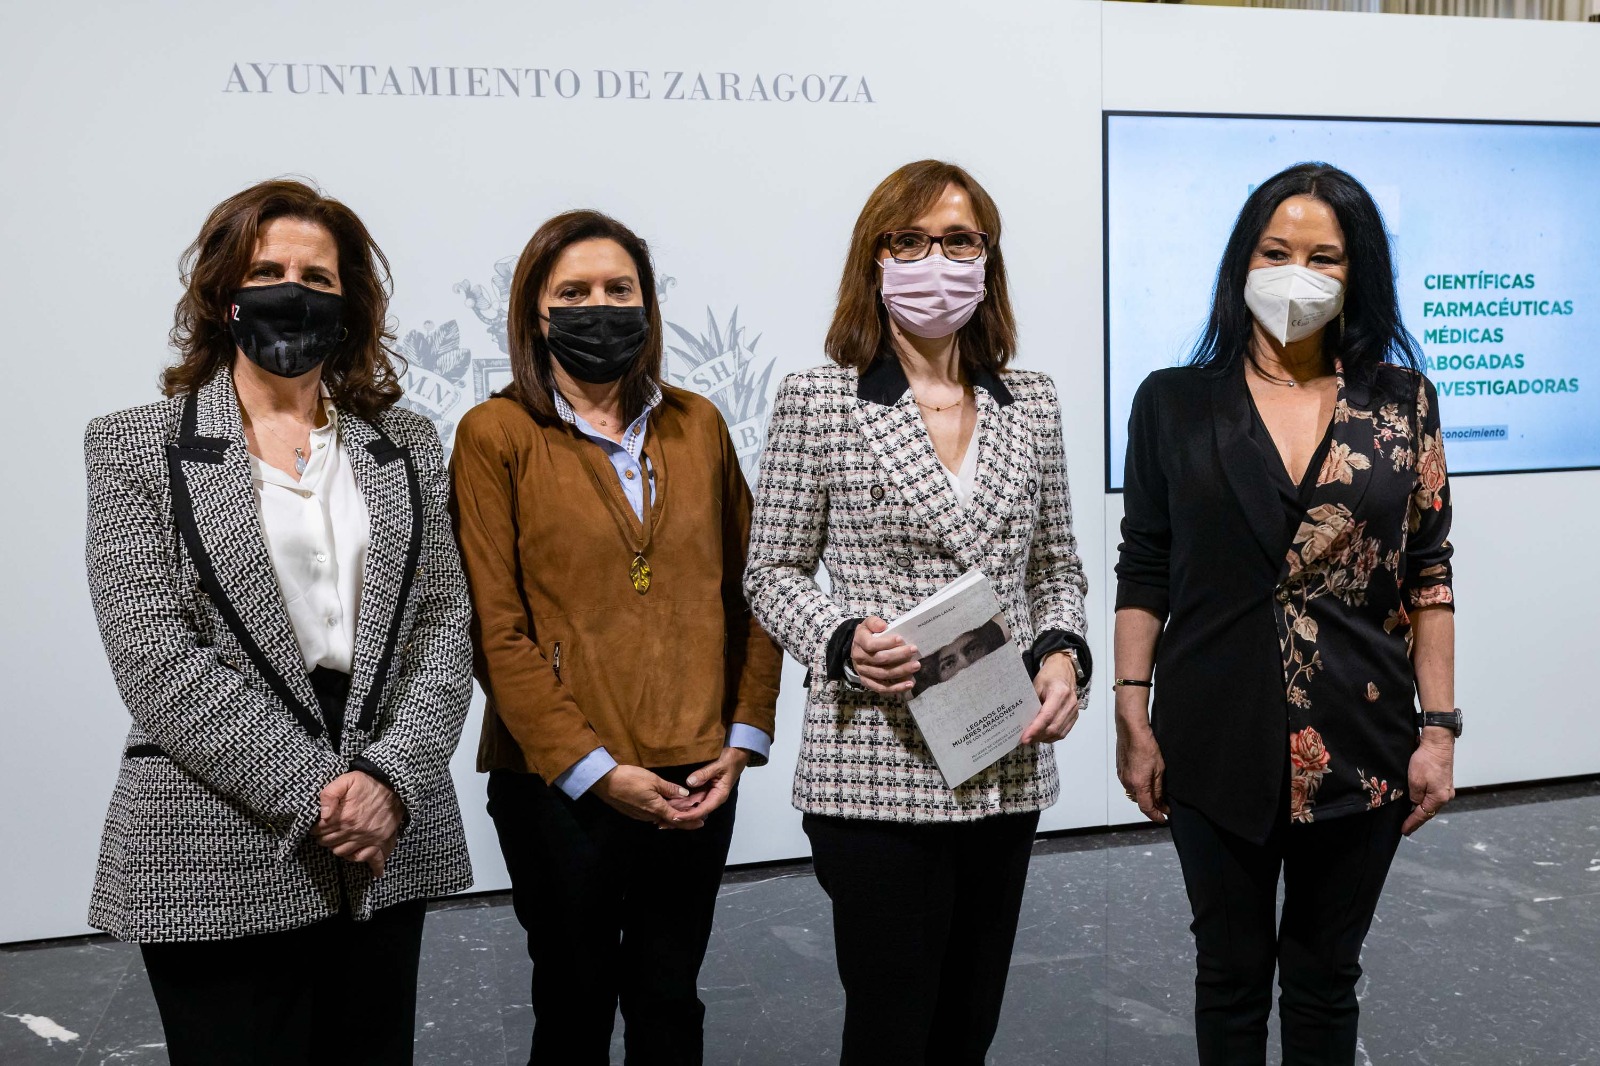 El Ayuntamiento Zaragoza rescata la biografía de 100 científicas aragonesas con motivo del 11-F. Noticia. de Zaragoza